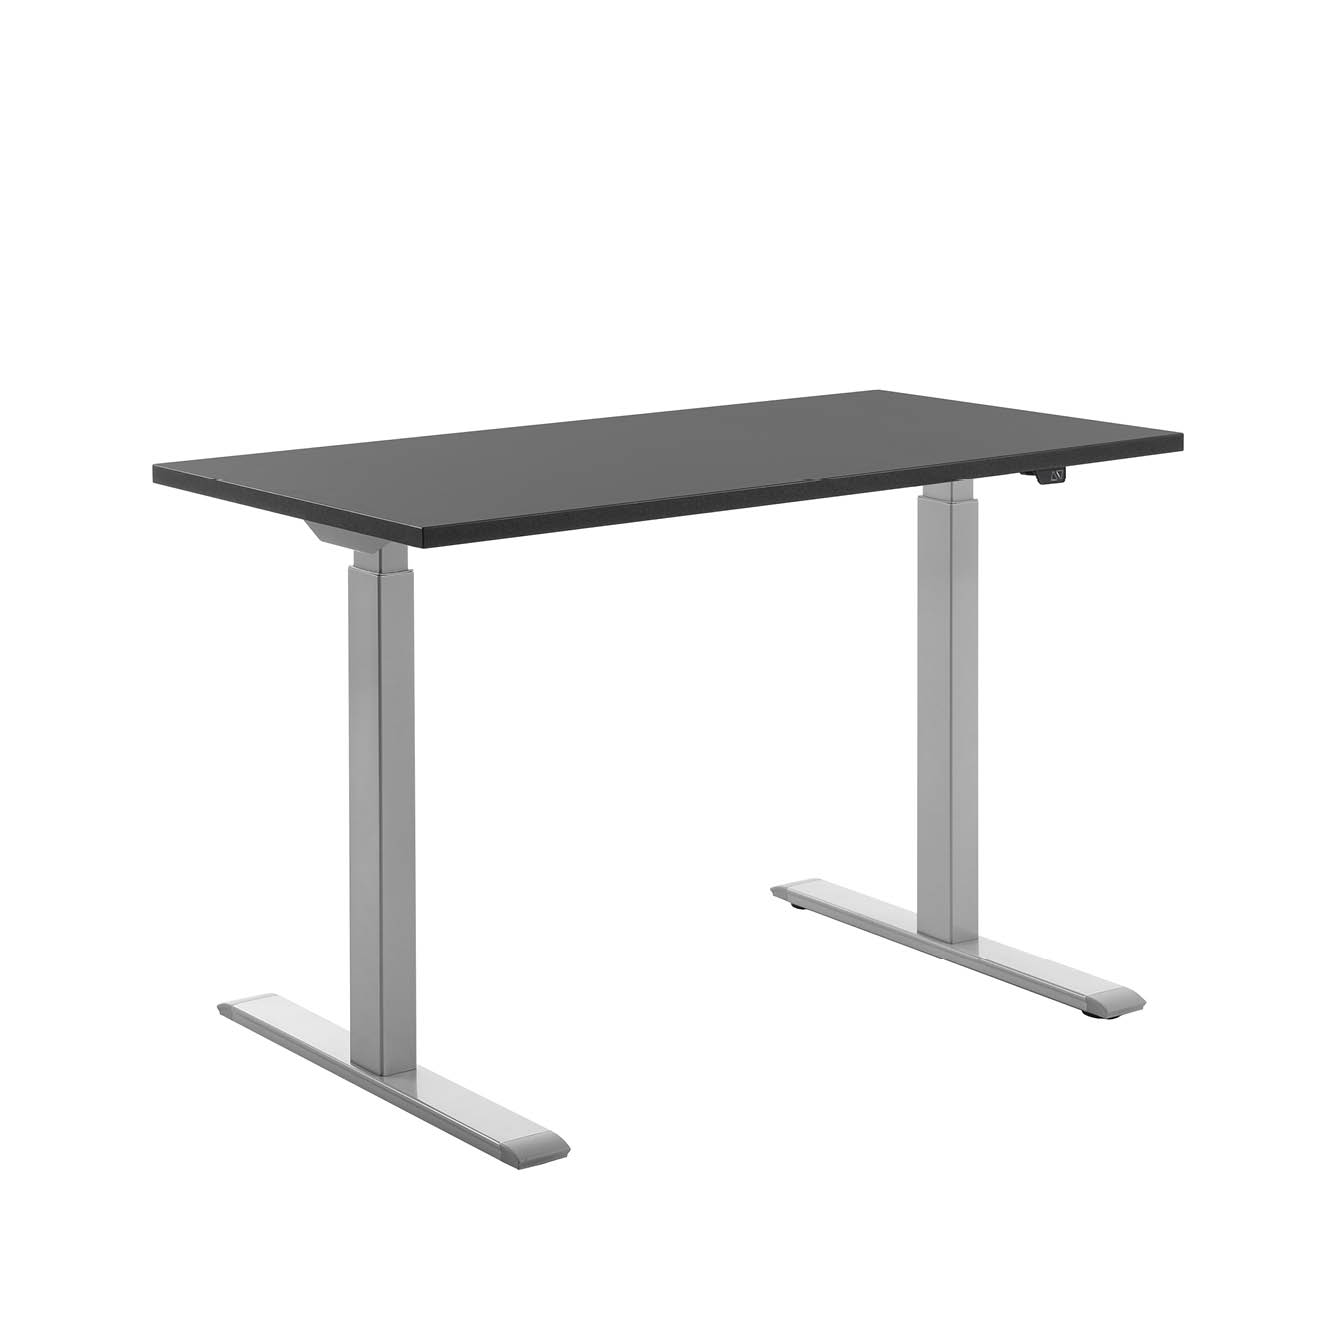 120 x 60 cm Schreibtisch Topstar Ergo E-Table höhenverstellbar - grau, schwarz